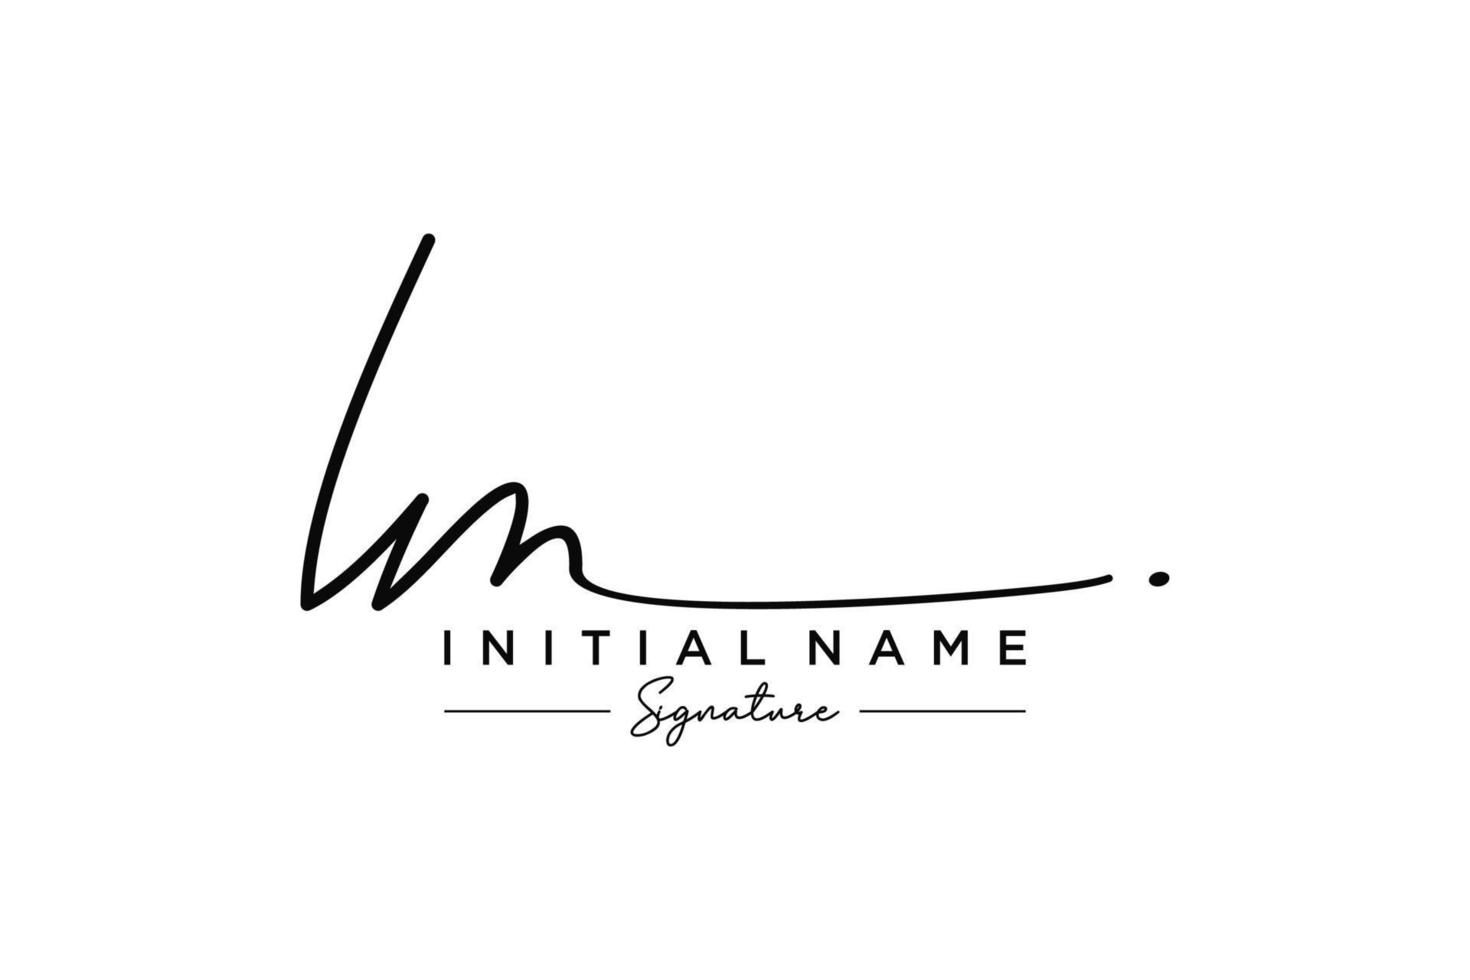 vector de plantilla de logotipo de firma de lm inicial. ilustración de vector de letras de caligrafía dibujada a mano.